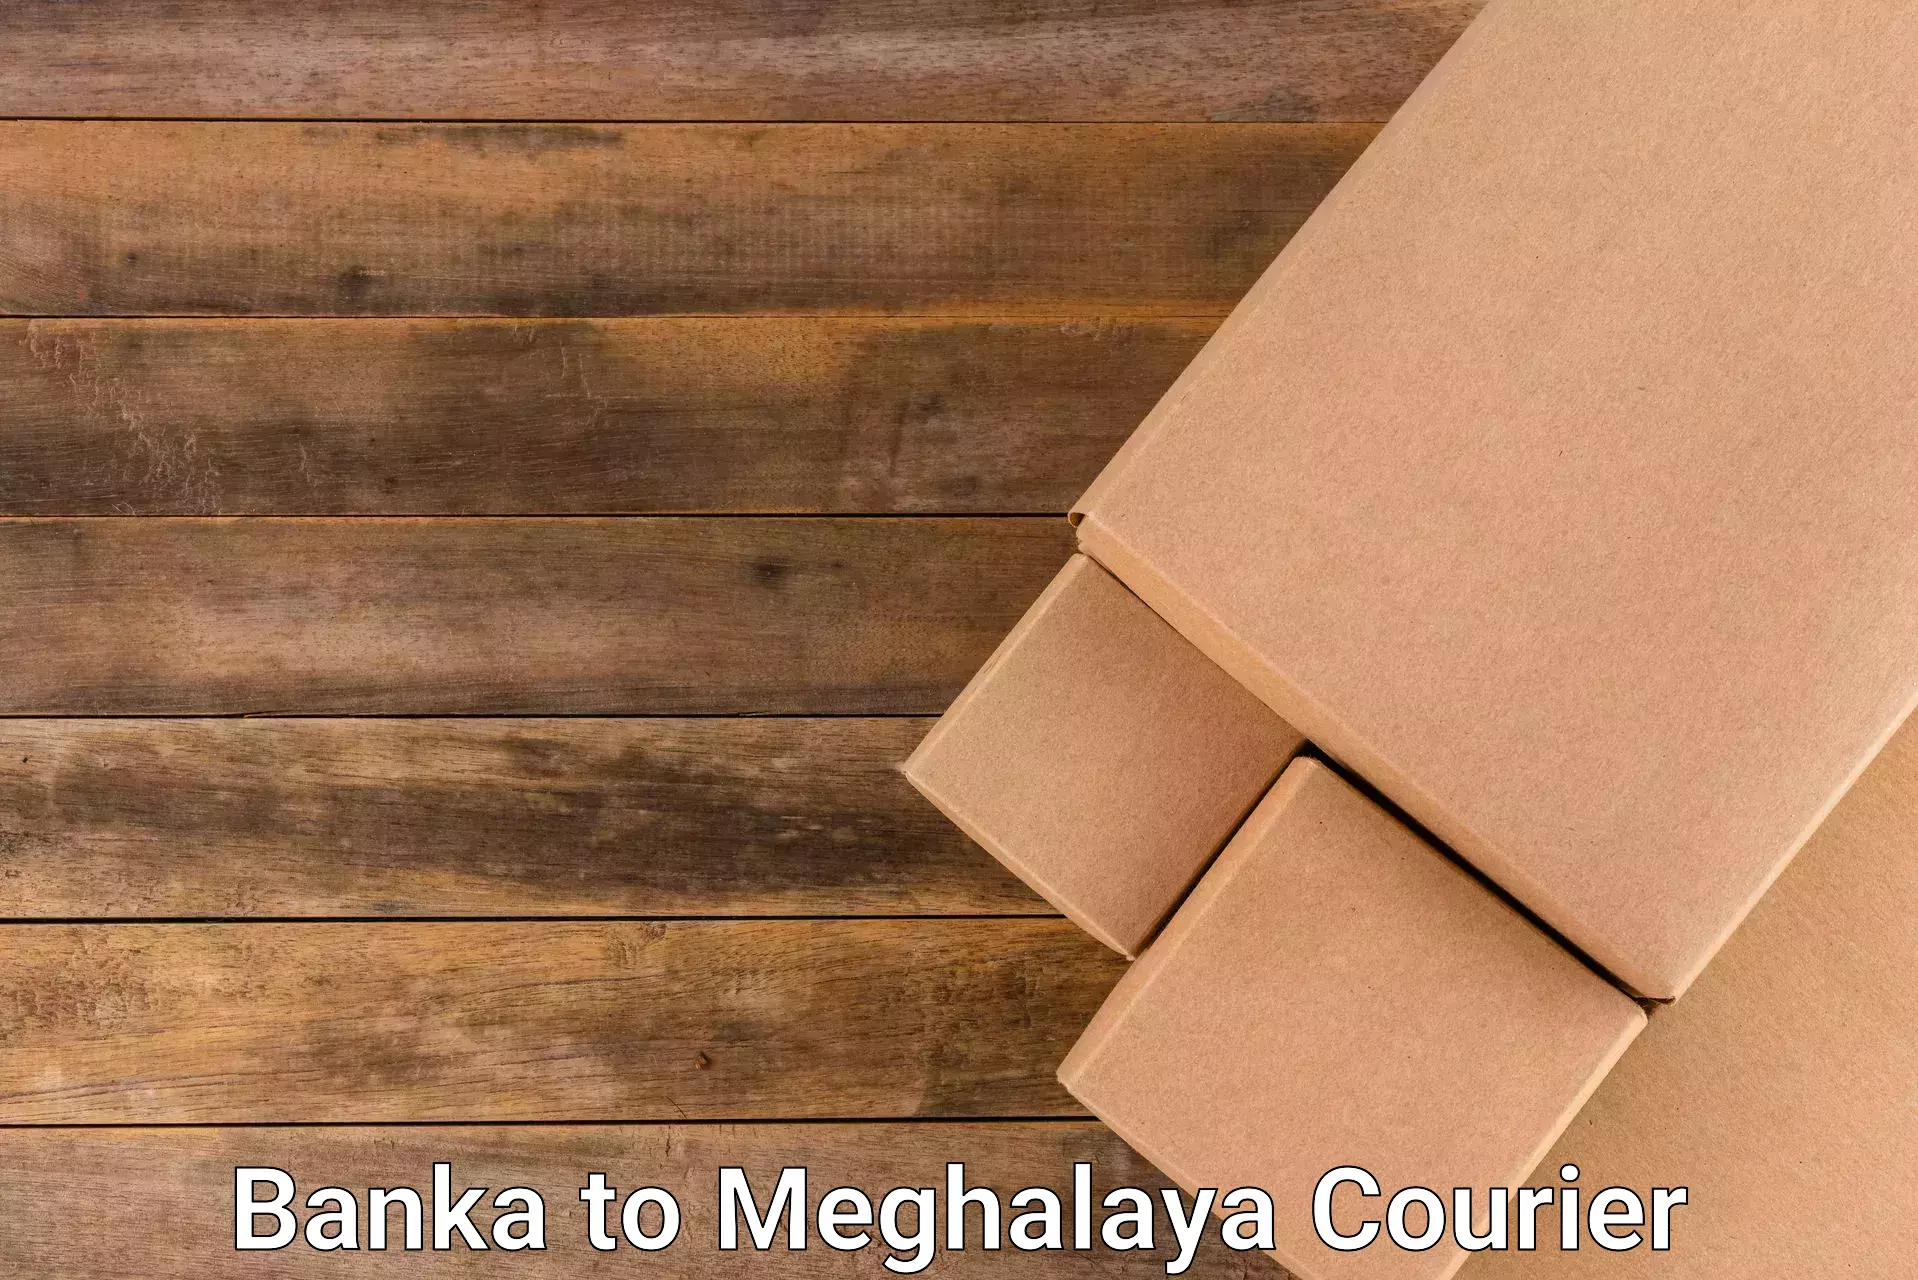 24/7 shipping services Banka to Meghalaya